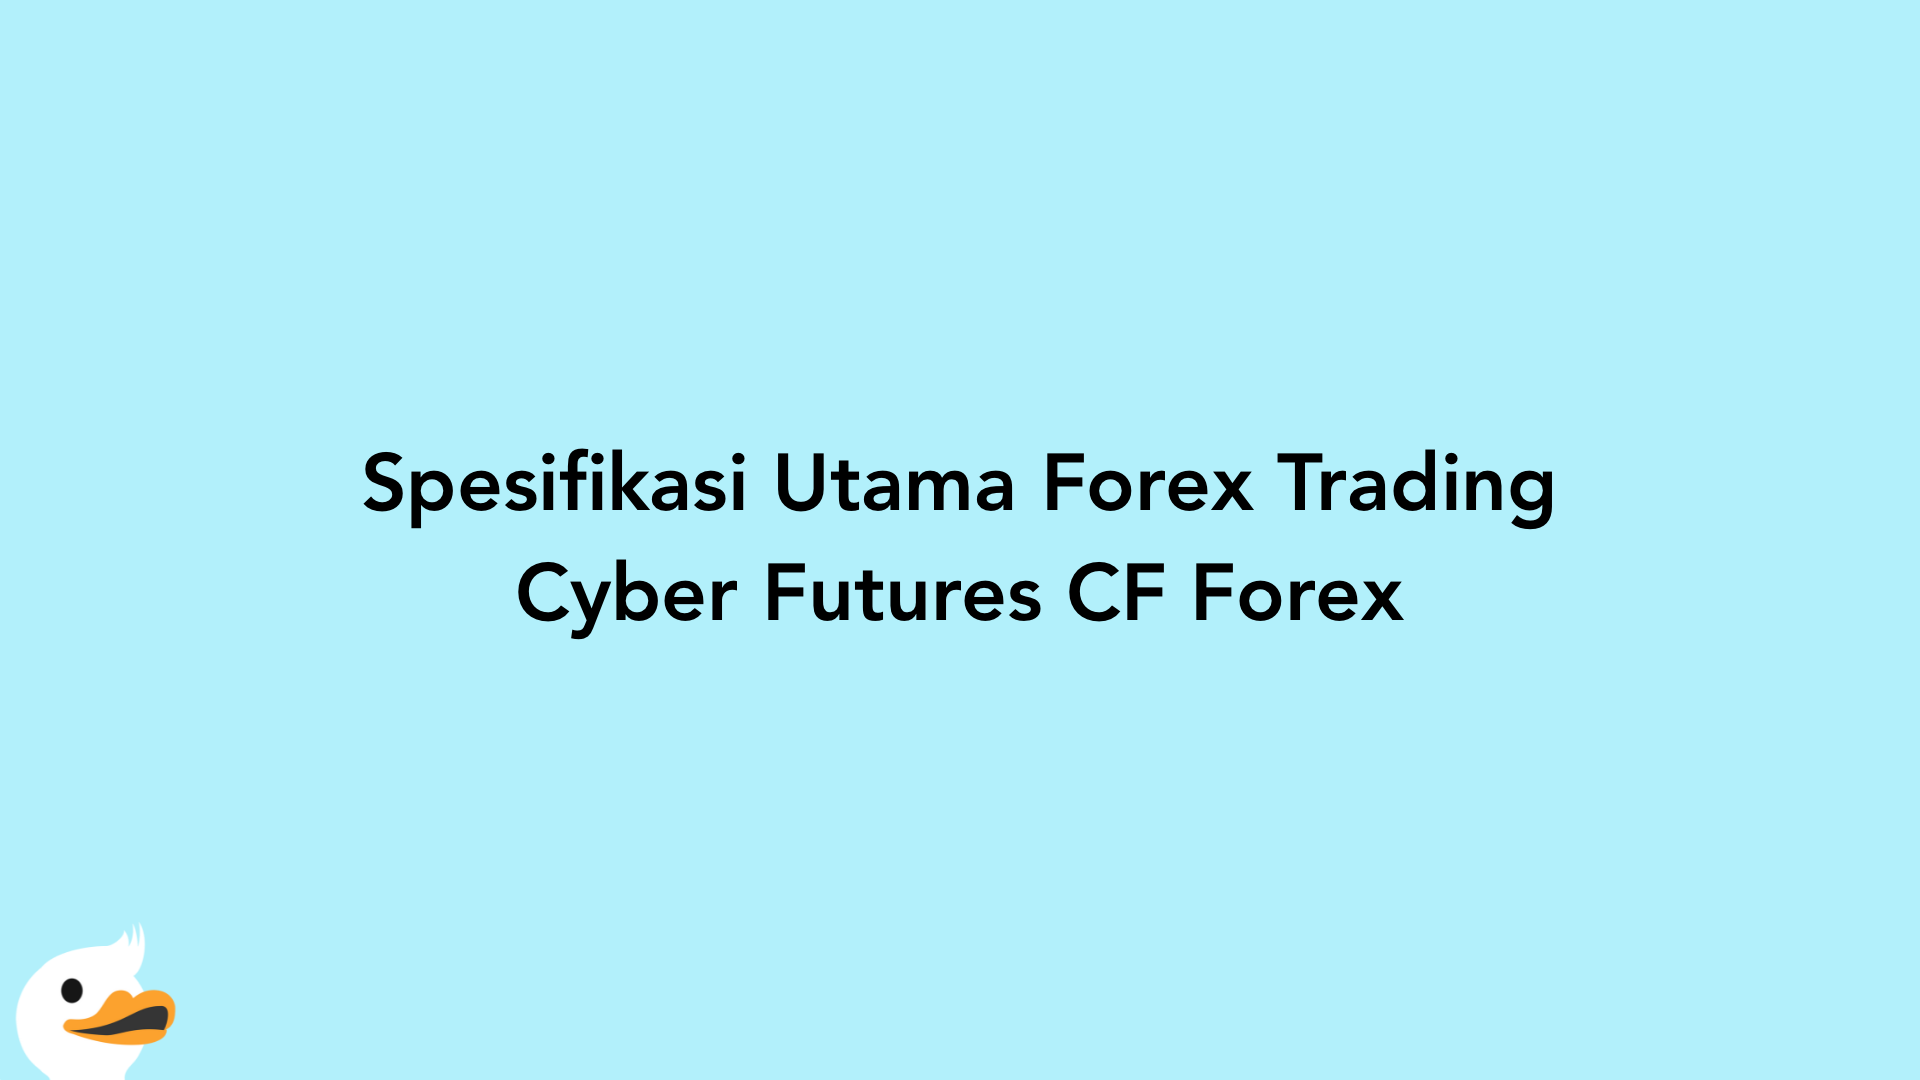 Spesifikasi Utama Forex Trading Cyber Futures CF Forex